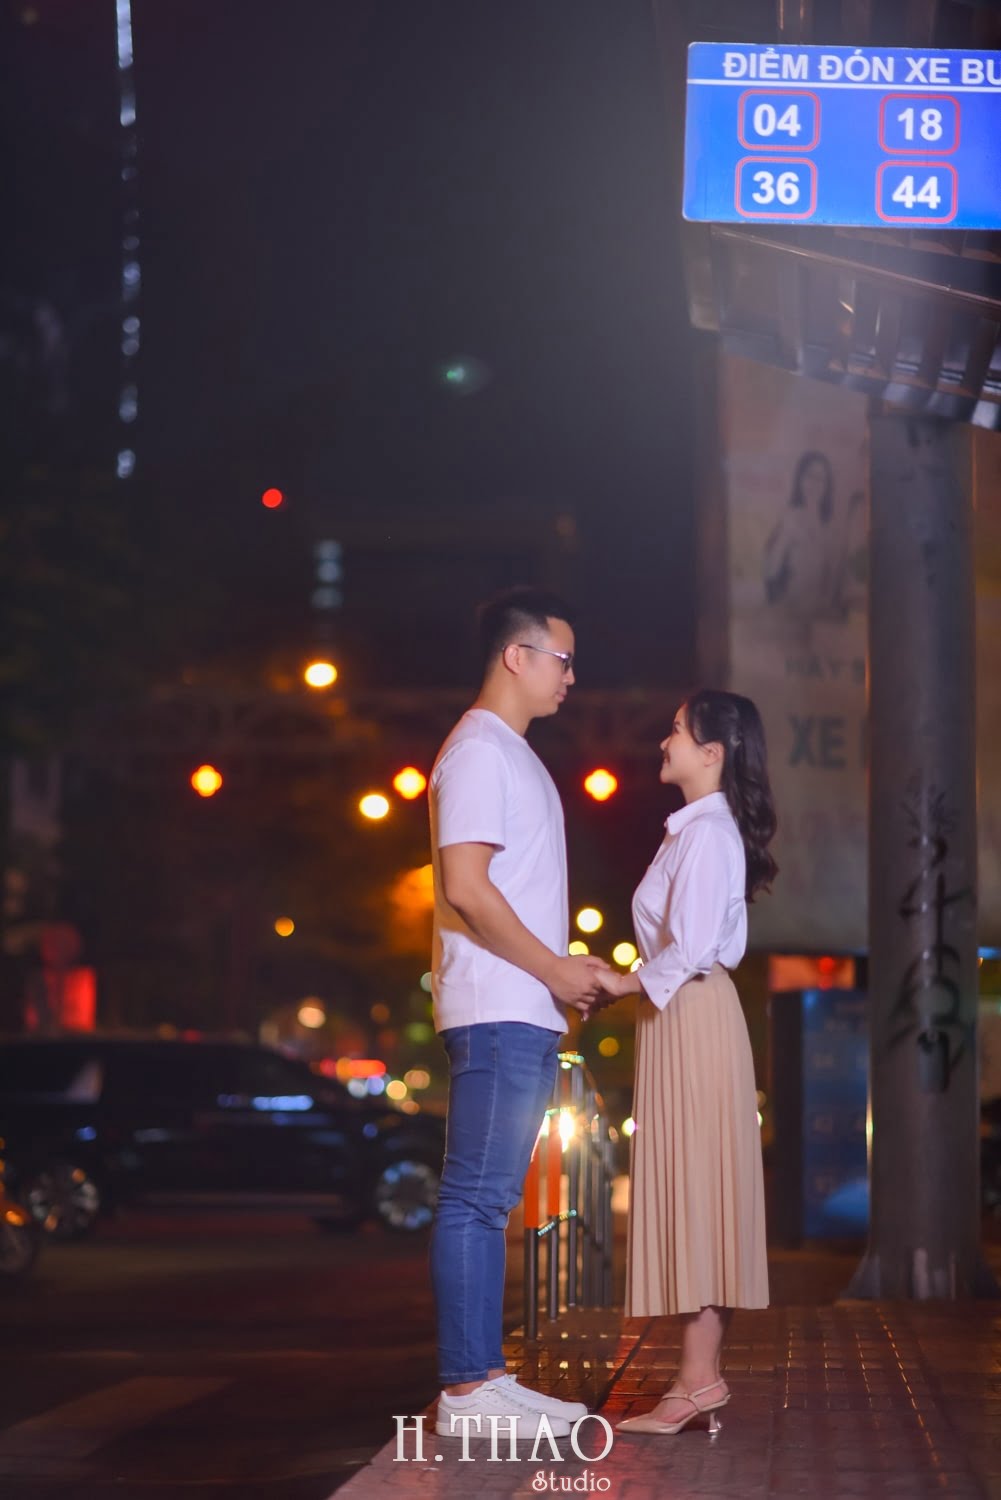 Anh chup couple ban dem 14 min - #2 Ý tưởng chụp ảnh ban đêm đẹp lung linh – HThao Studio